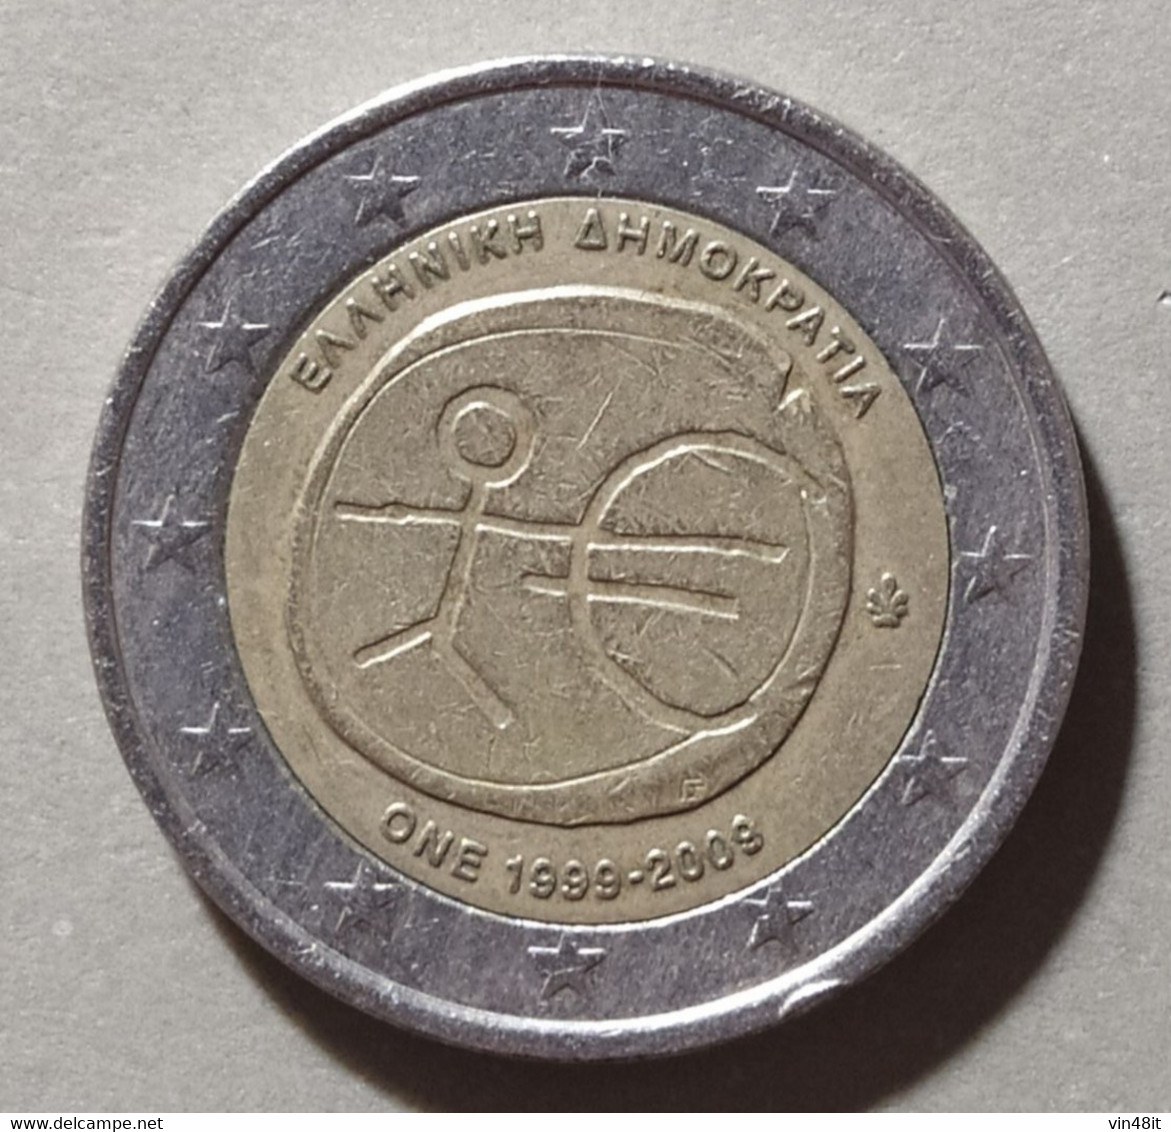 2009 - GRECIA  - MONETA IN EURO (COMMEMORATIVA)  DEL VALORE DI 2,00  EURO - USATA - Griekenland